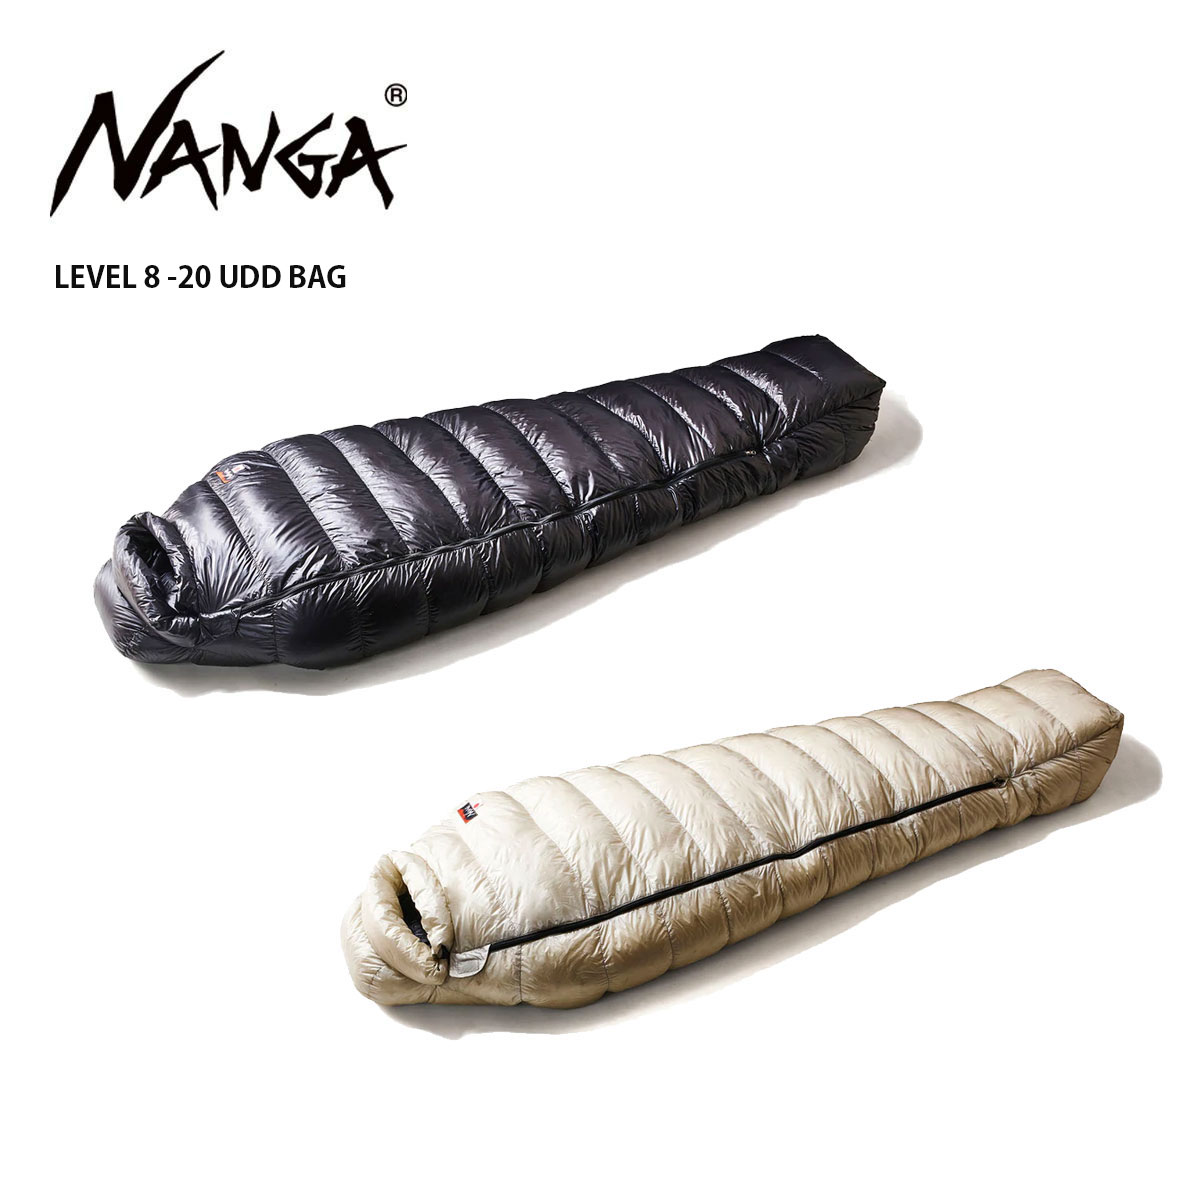 最高の品質の NANGA ナンガ シュラフ 寝袋 LEVEL 8 -20 UDD BAG